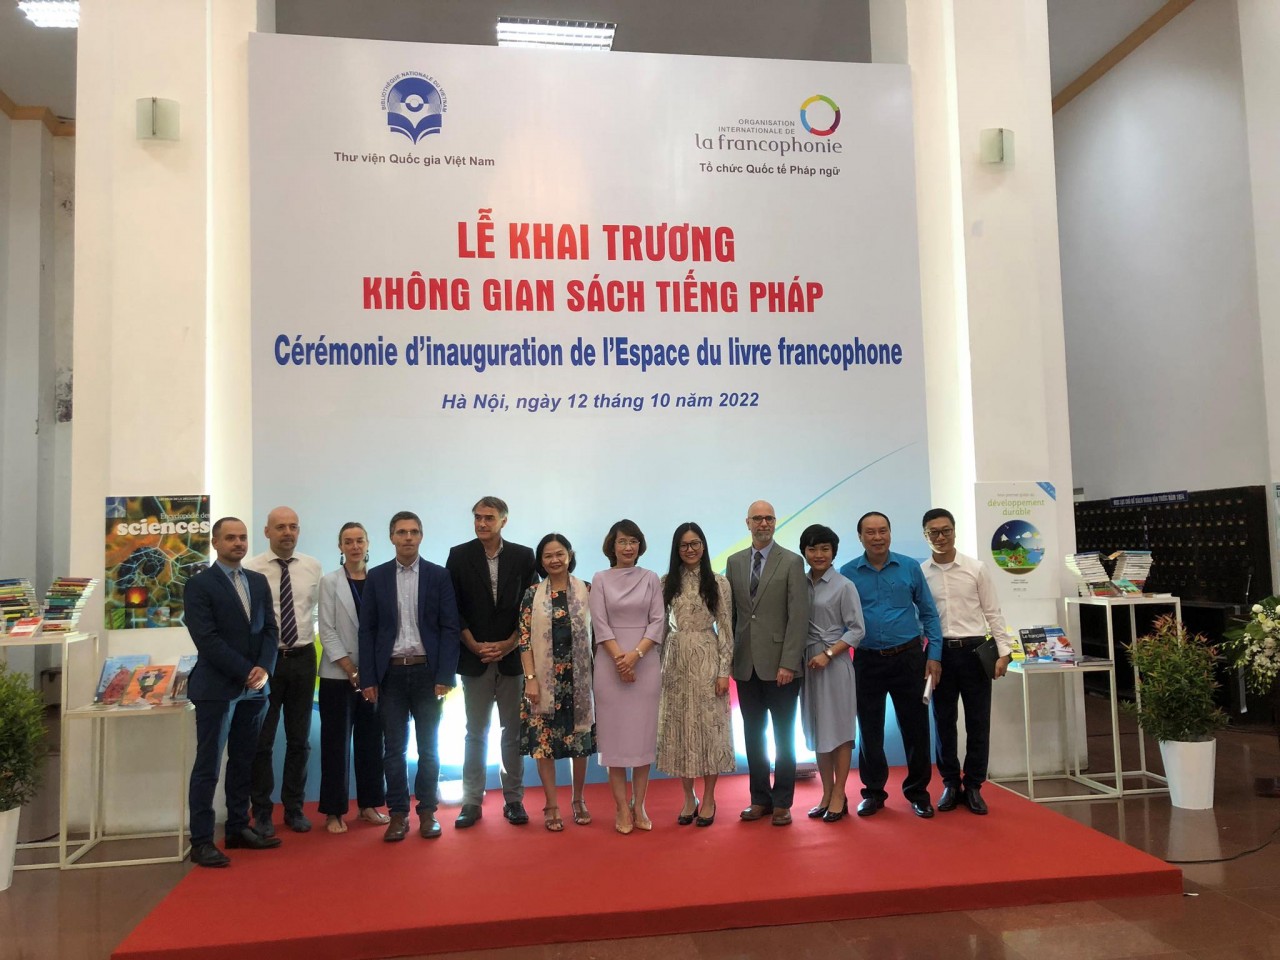 Phó Chủ tịch nước Võ Thị Ánh Xuân tham dự Hội nghị cấp cao Pháp ngữ thể hiện tính trách nhiệm cao của Việt Nam với cộng đồng quốc tế